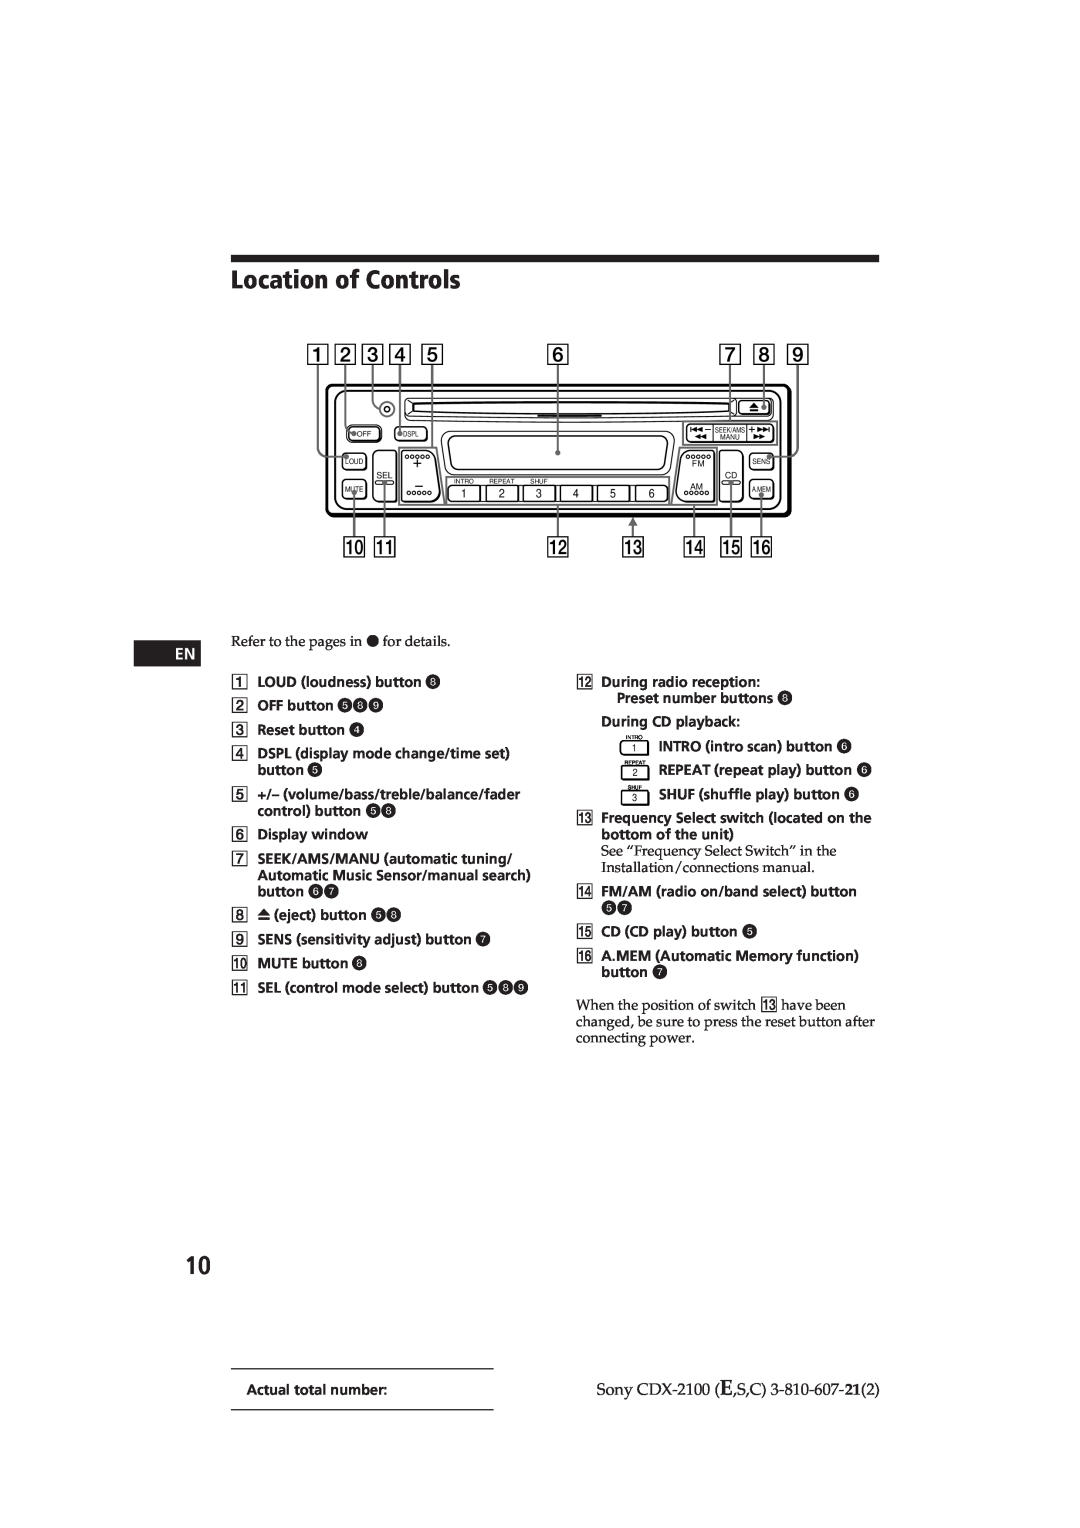 Sony manual Location of Controls, Sony CDX-2100E,S,C 